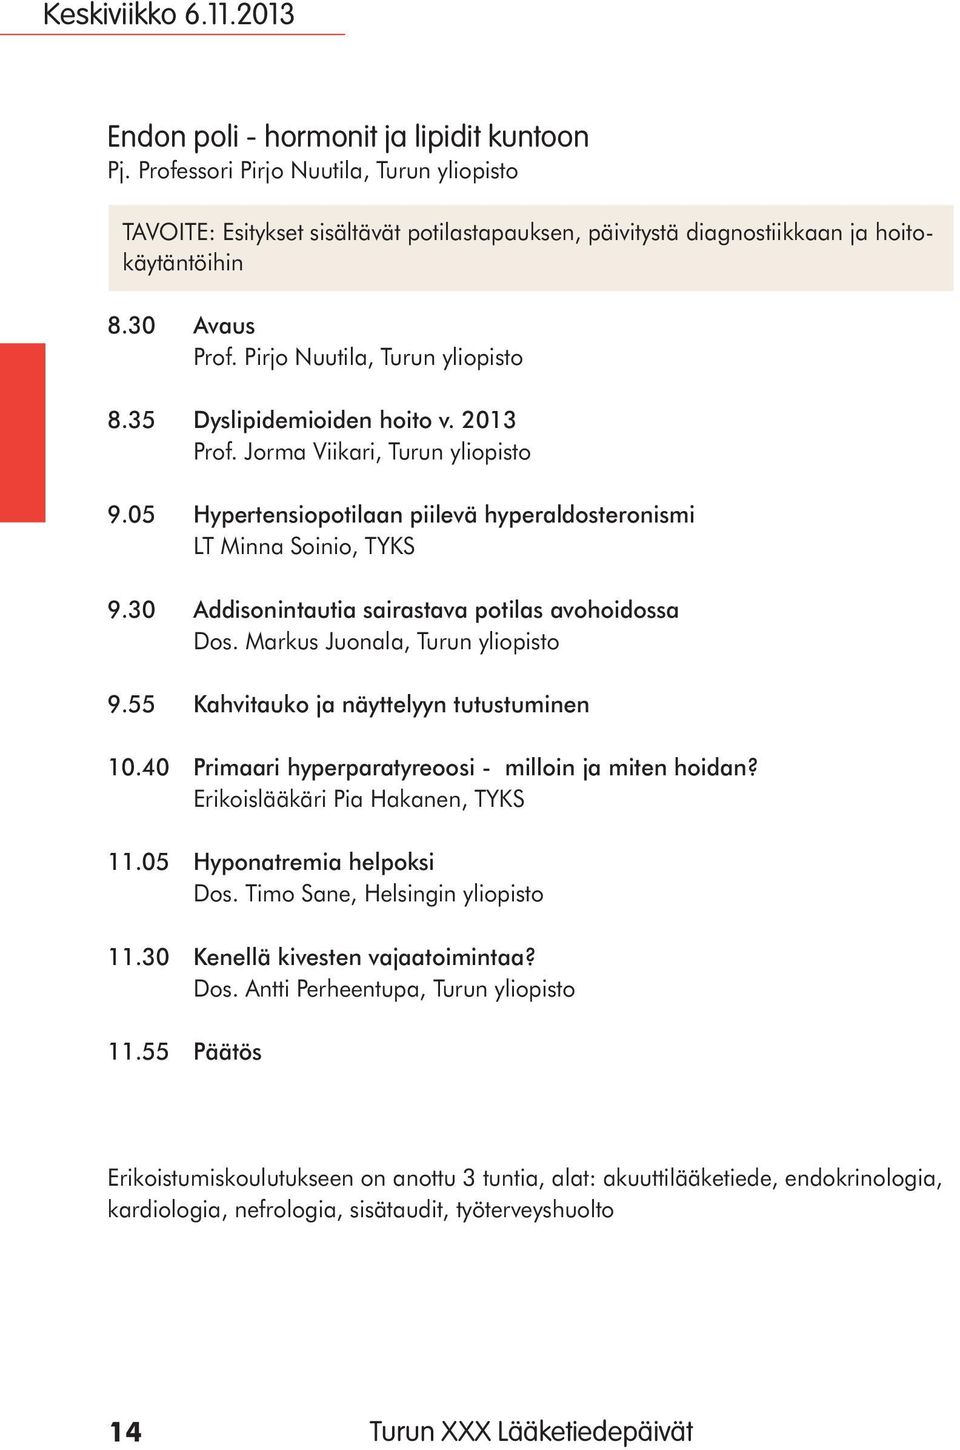 35 Dyslipidemioiden hoito v. 2013 Prof. Jorma Viikari, Turun yliopisto 9.05 Hypertensiopotilaan piilevä hyperaldosteronismi LT Minna Soinio, TYKS 9.